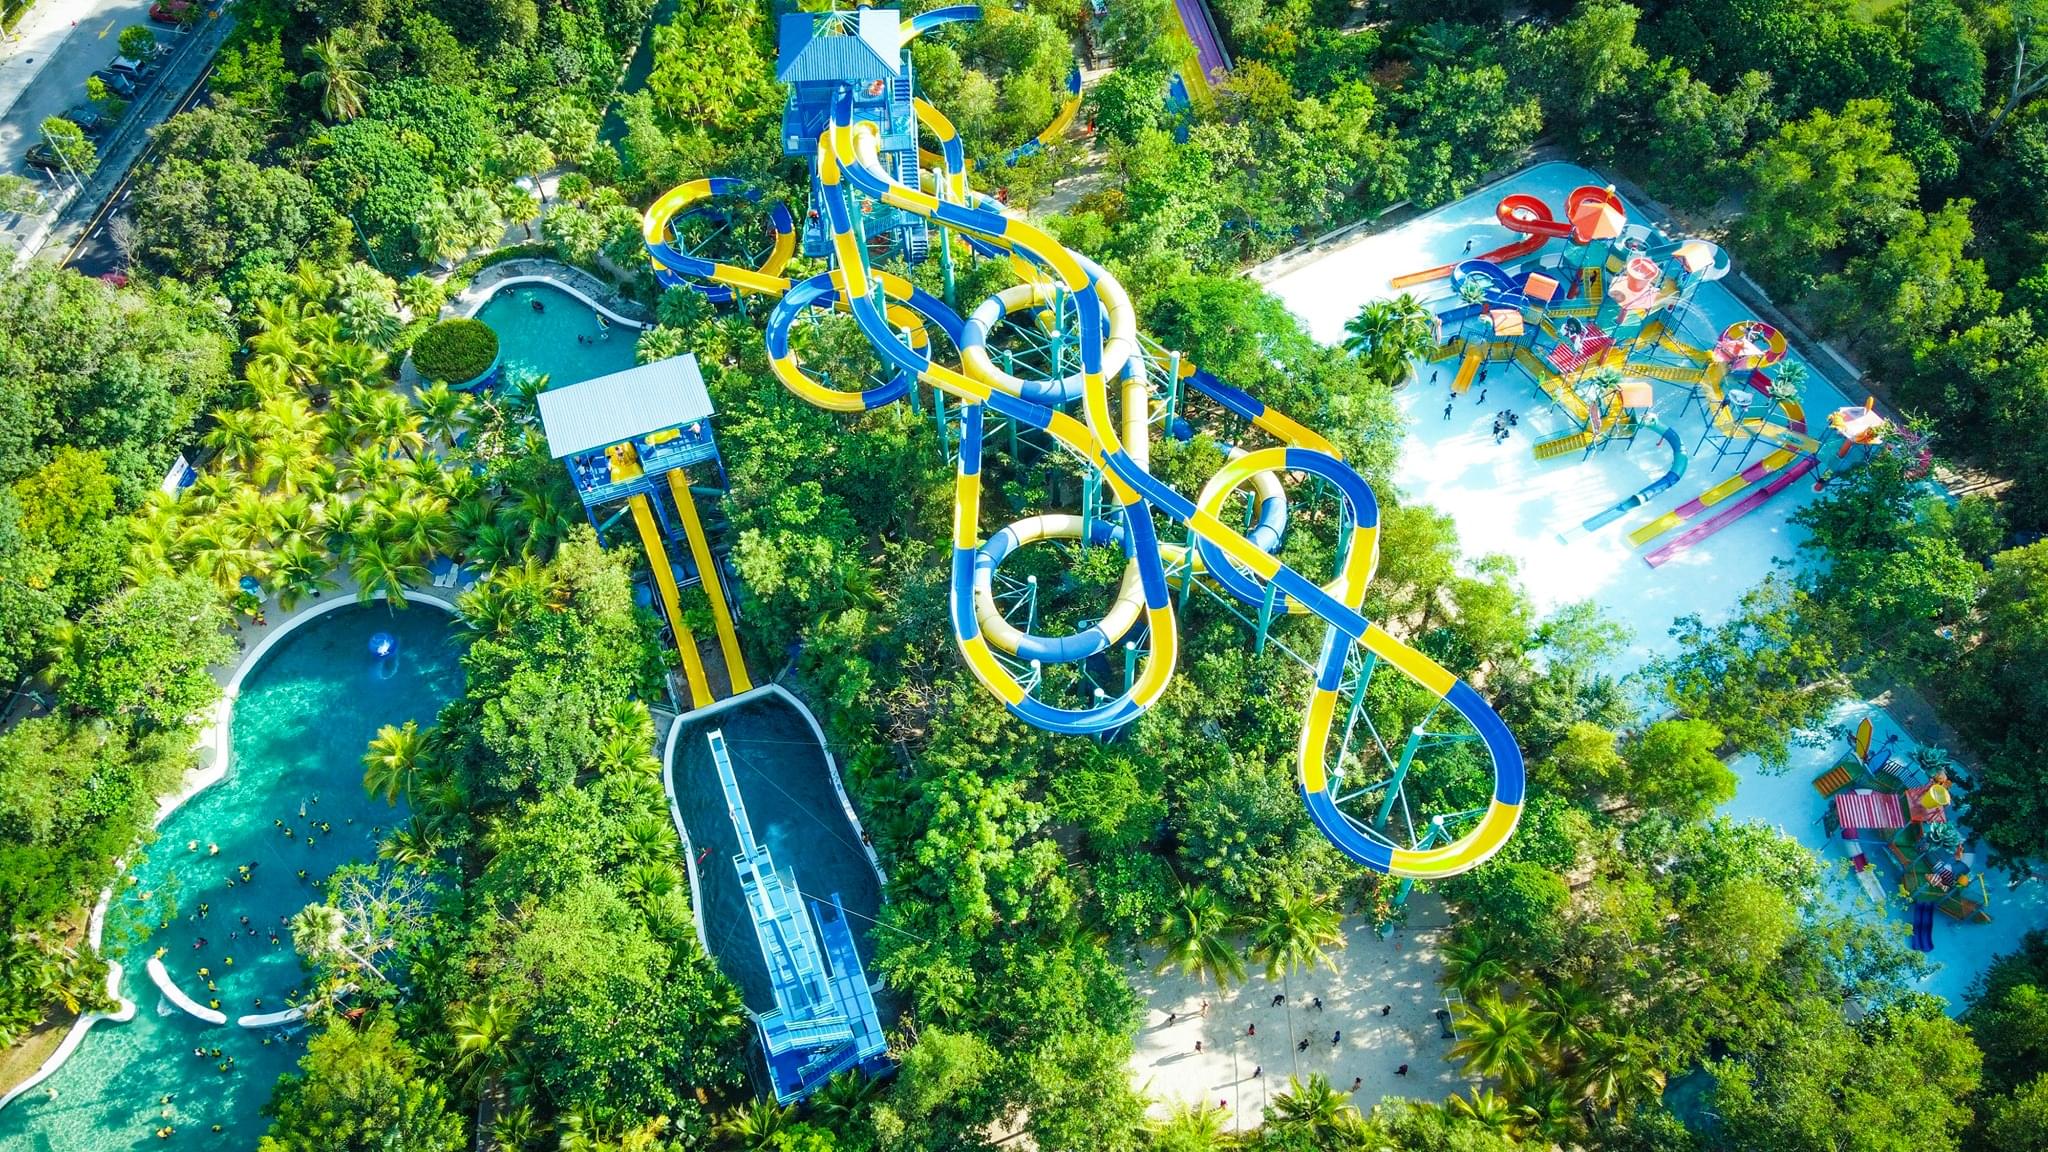 Escape Theme Park Penang Overview